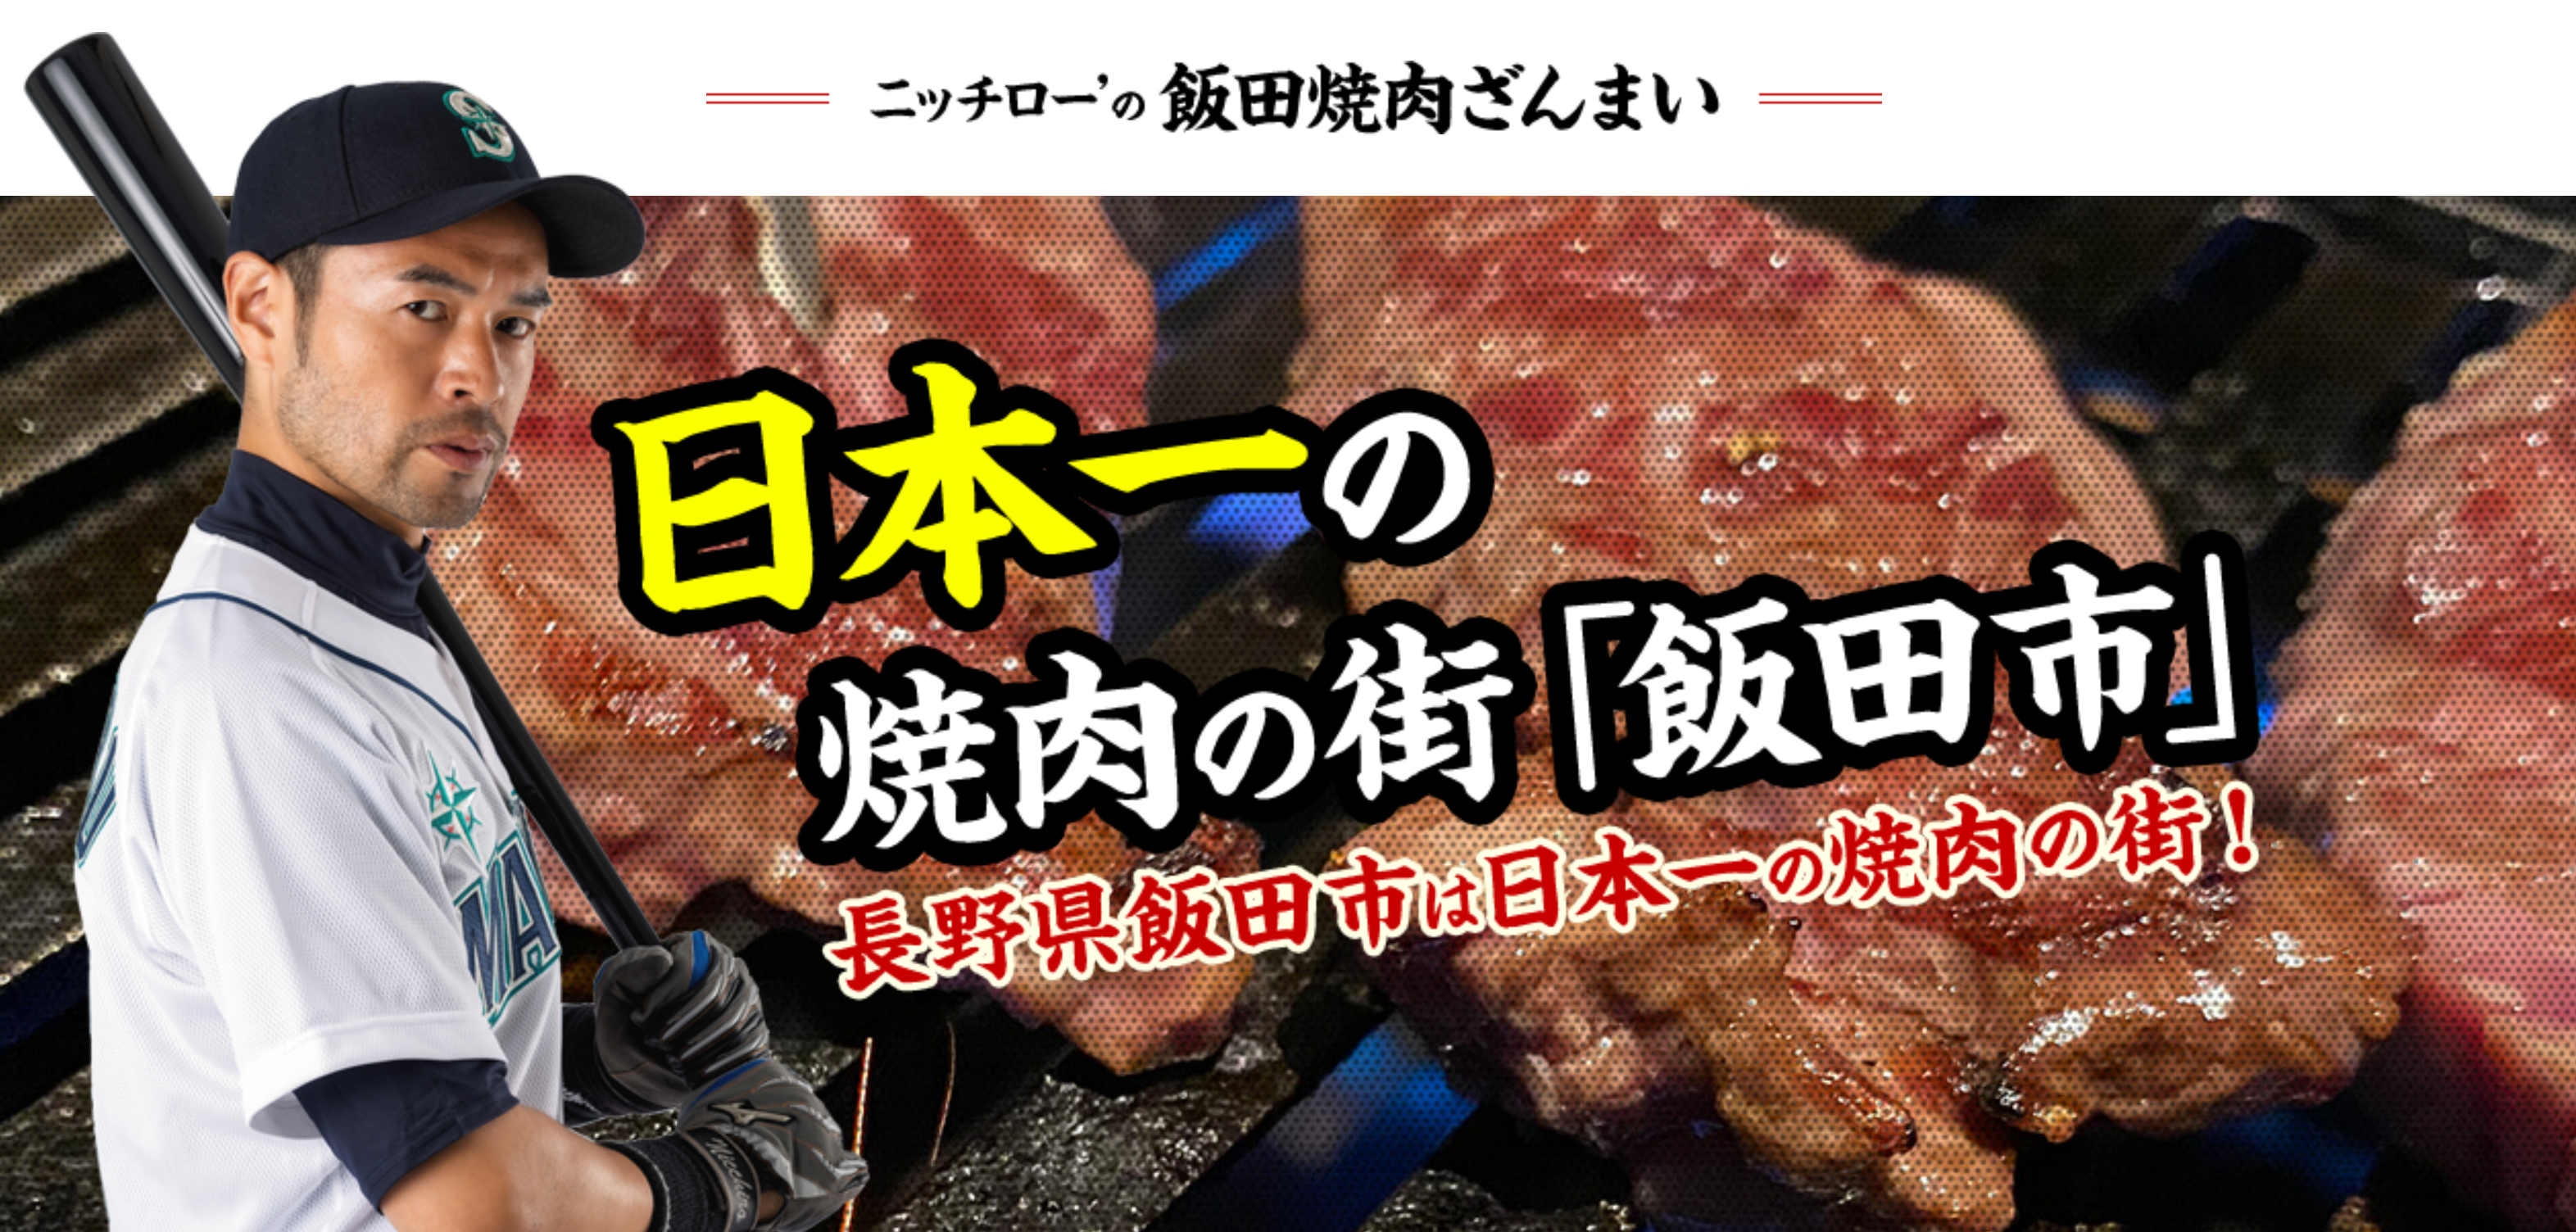 飯田焼肉大使のニッチロー さんの焼肉ツアーが 発表されました ジンギスカンと天然ジビエ 肉のスズキヤ